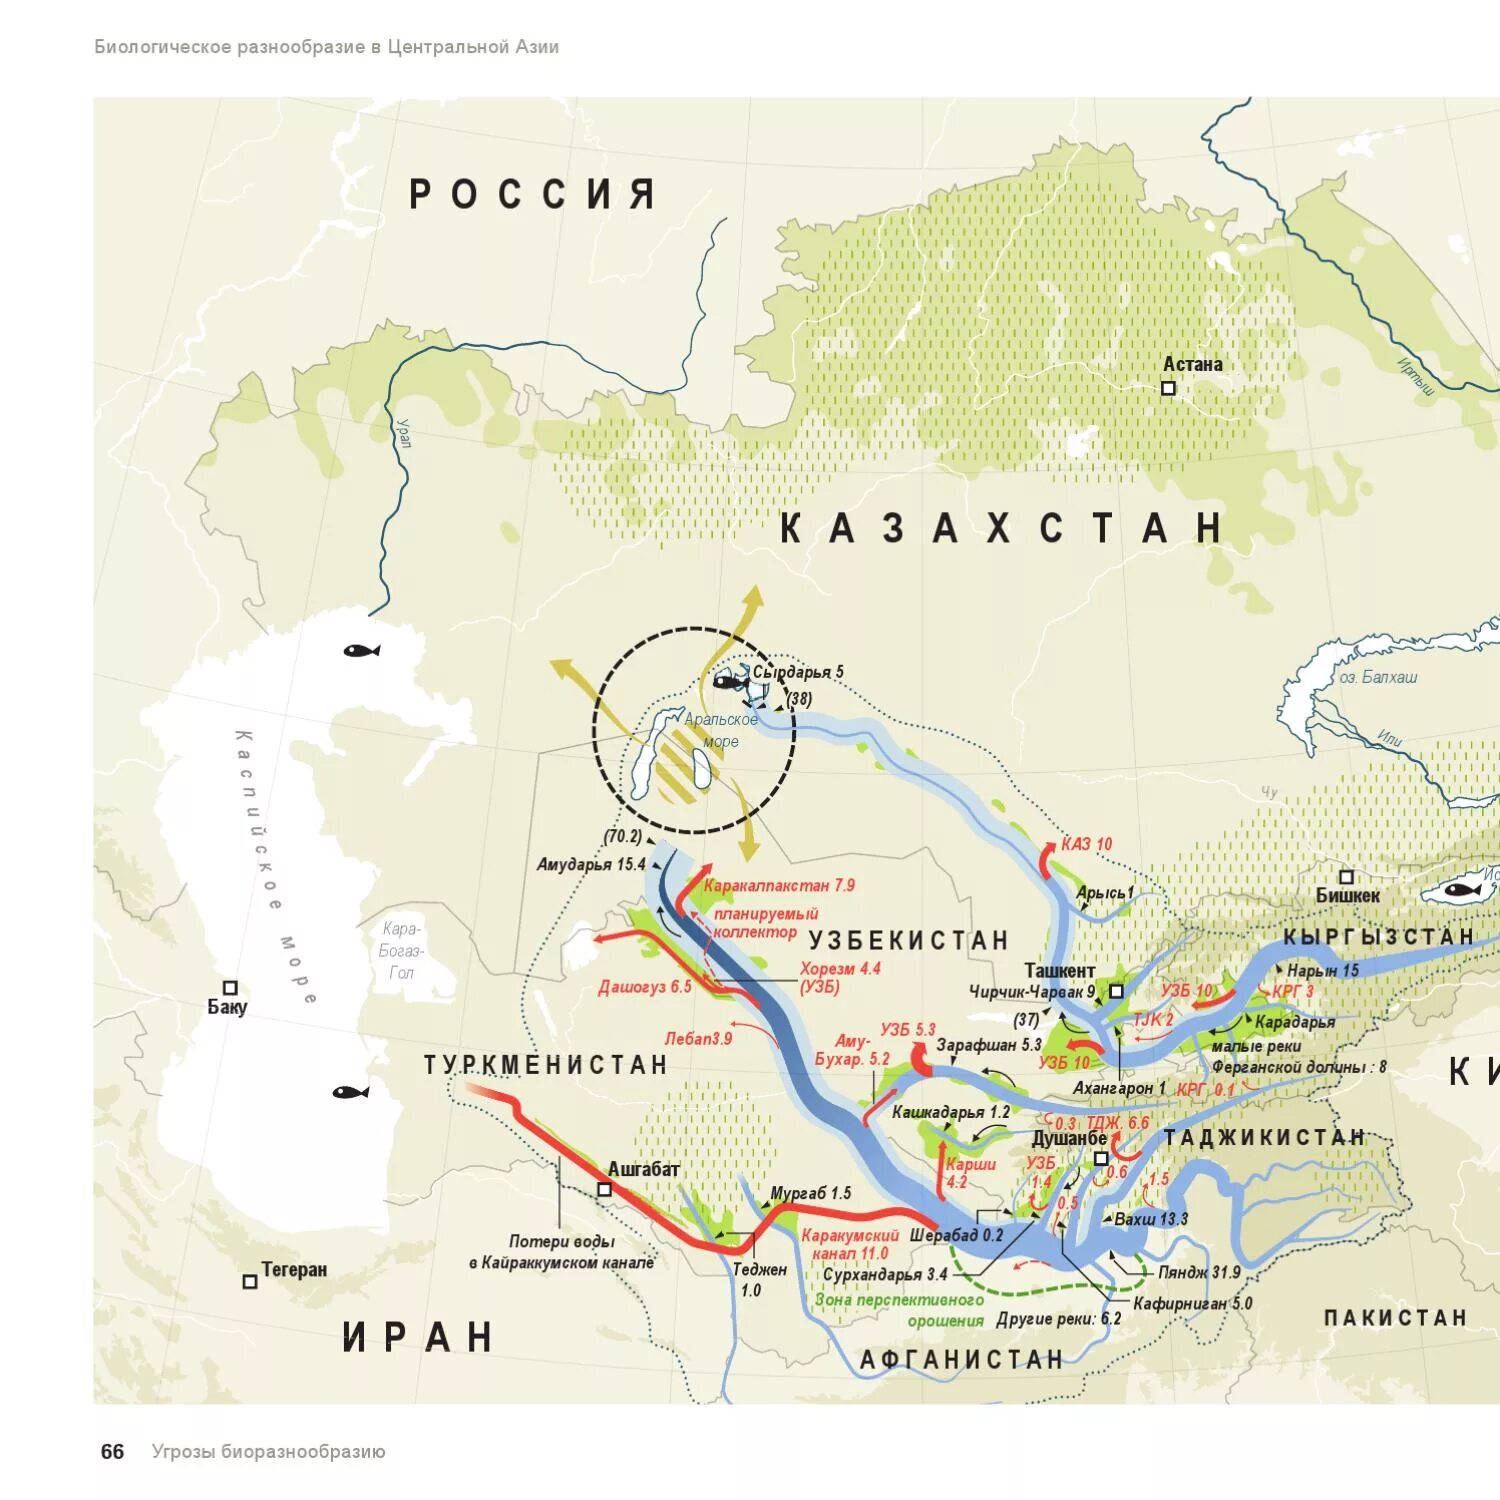 Реки Амударья и Сырдарья на карте. Карта рек Амударья и Сырдарья на карте. Аральское море Амударья и Сырдарья на карте.